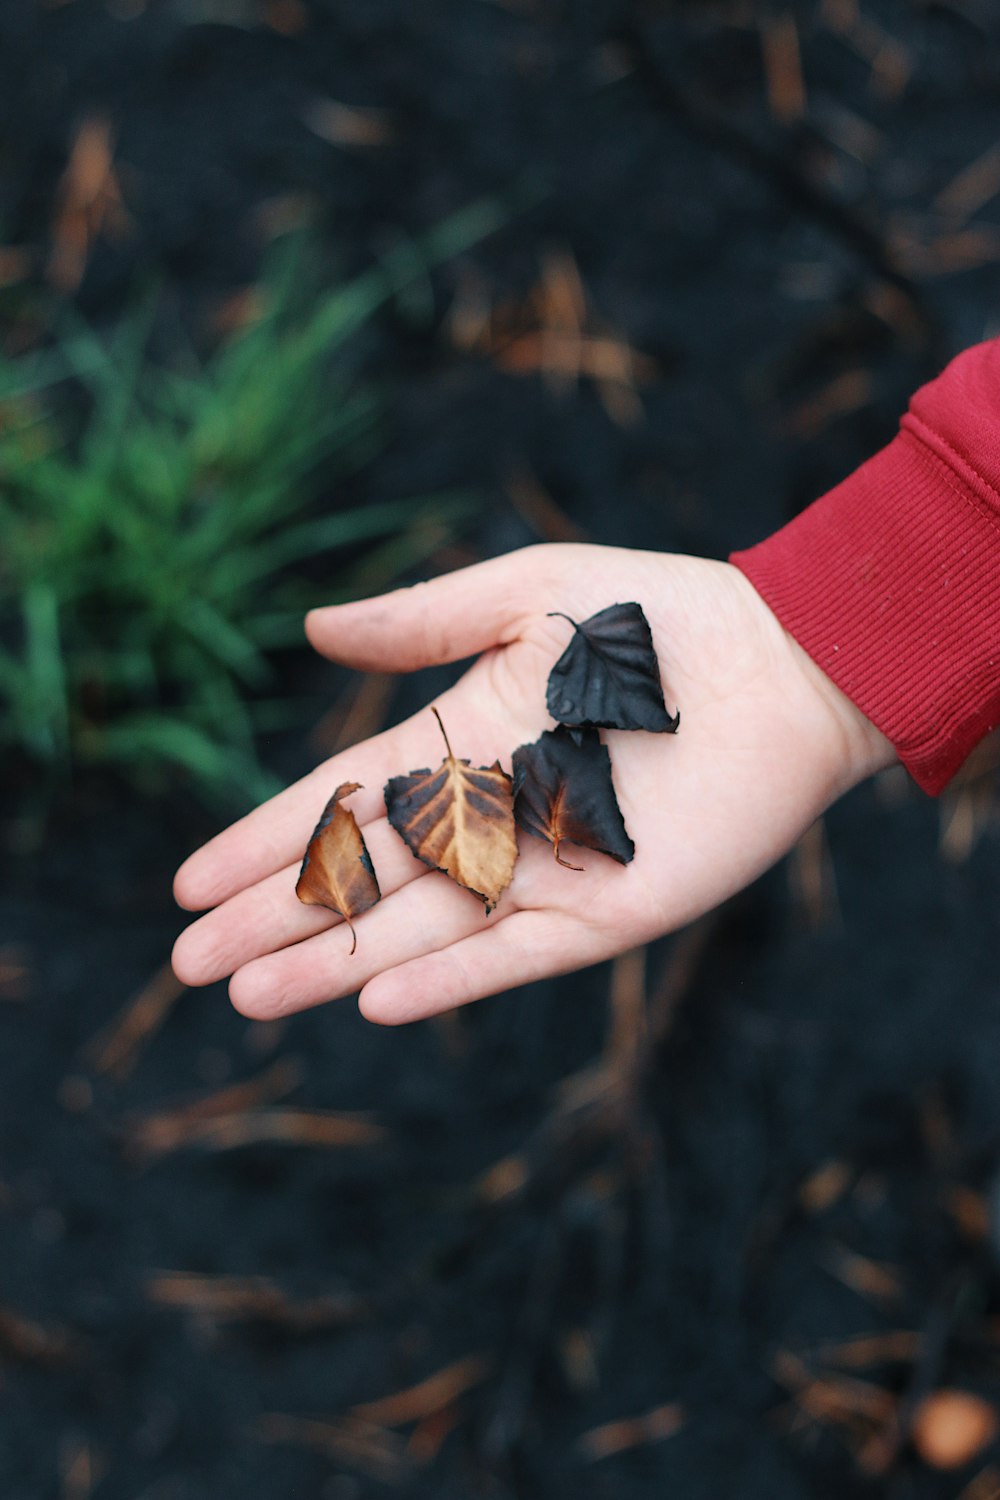 Cuatro hojas marrones y negras en la palma de la mano de la persona